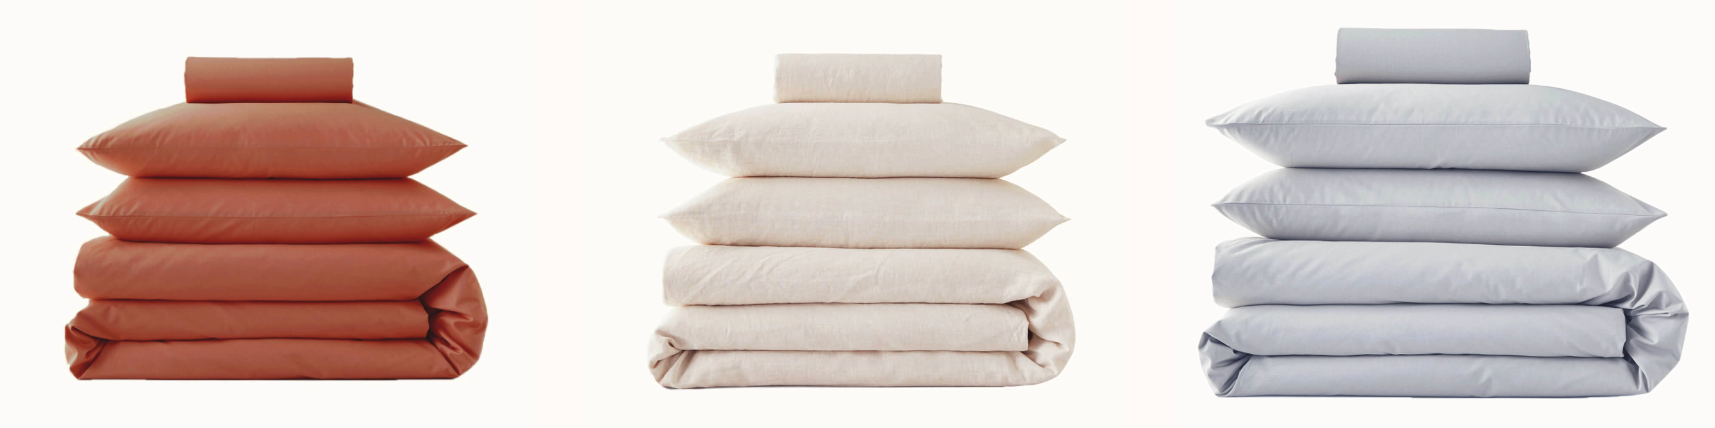 Kipli une marque 100% naturelle de linge de lit pour location saisonnière © Kipli